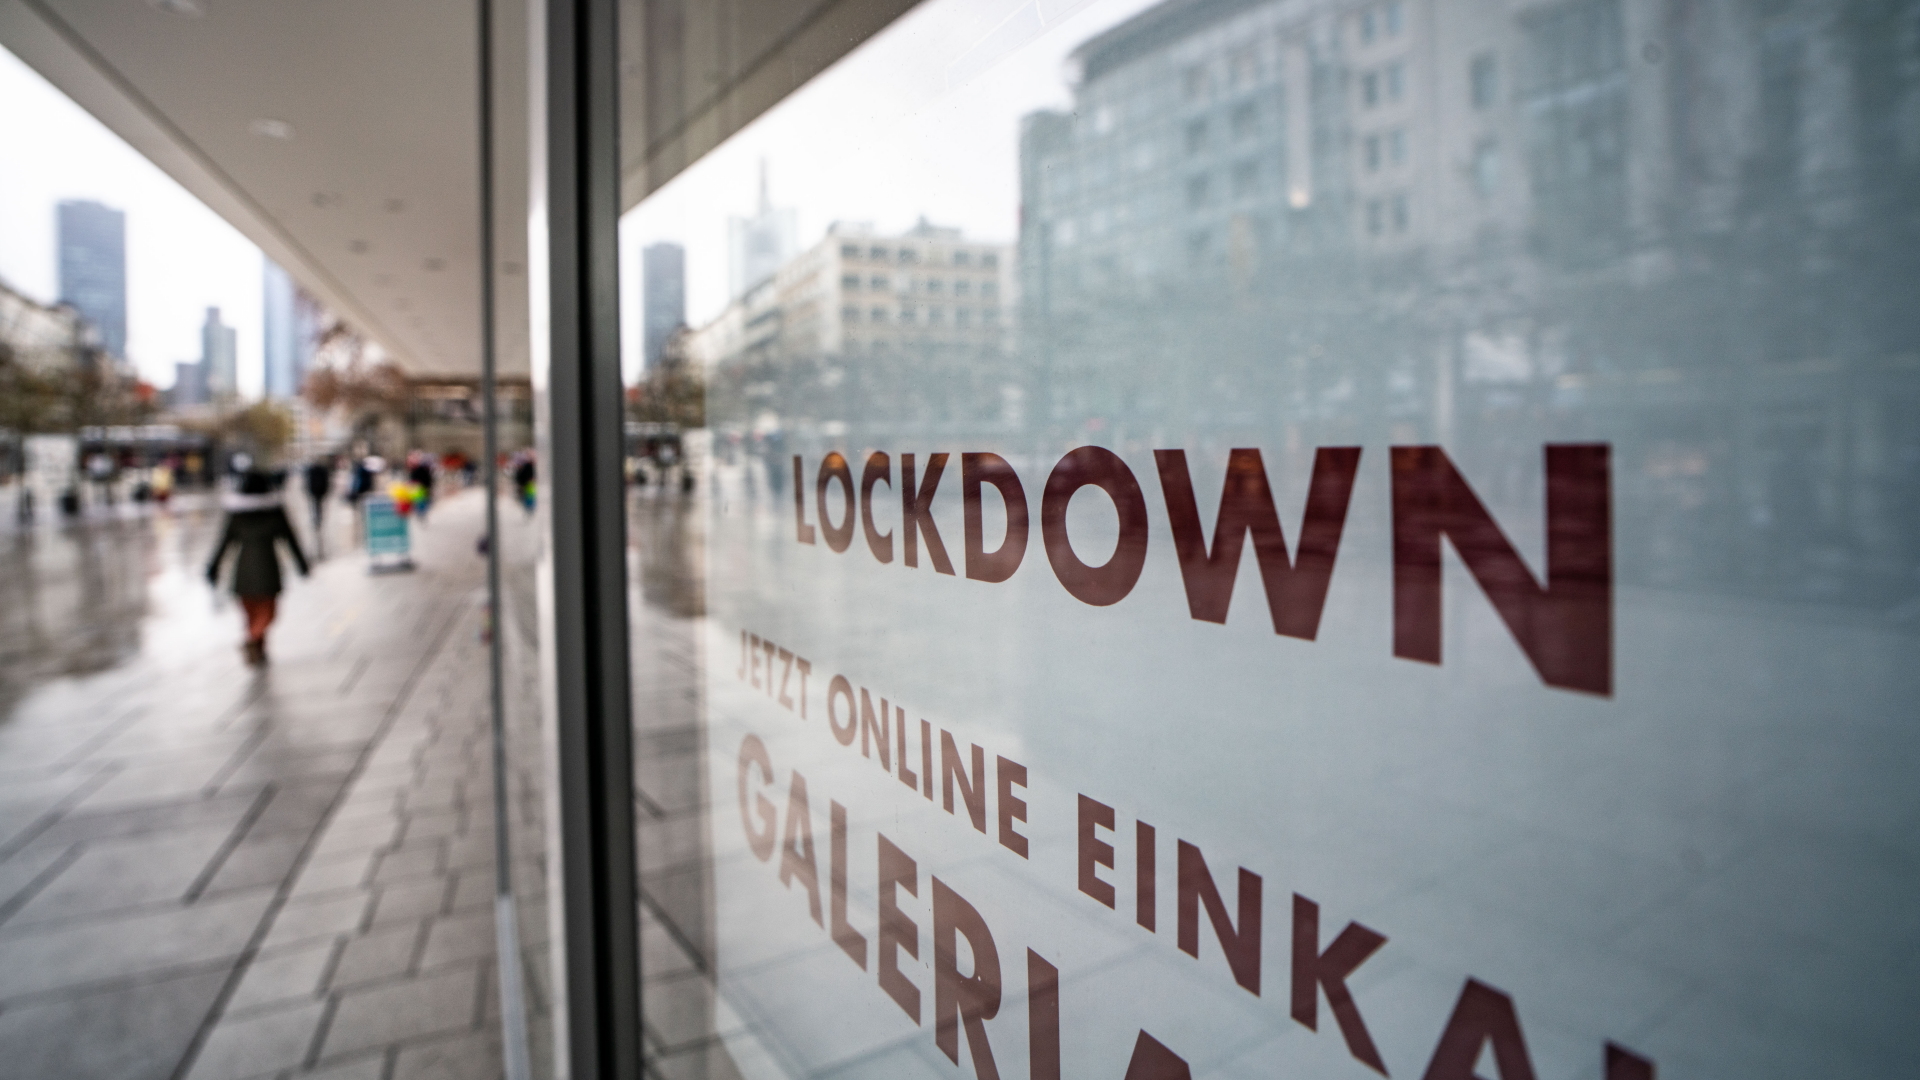 "Lockdown" steht im Schaufenster eines geschlossenen Kaufhauses auf der Frankfurter Zeil, das darunter zum Online-Einkauf rät (Archivbild). | dpa